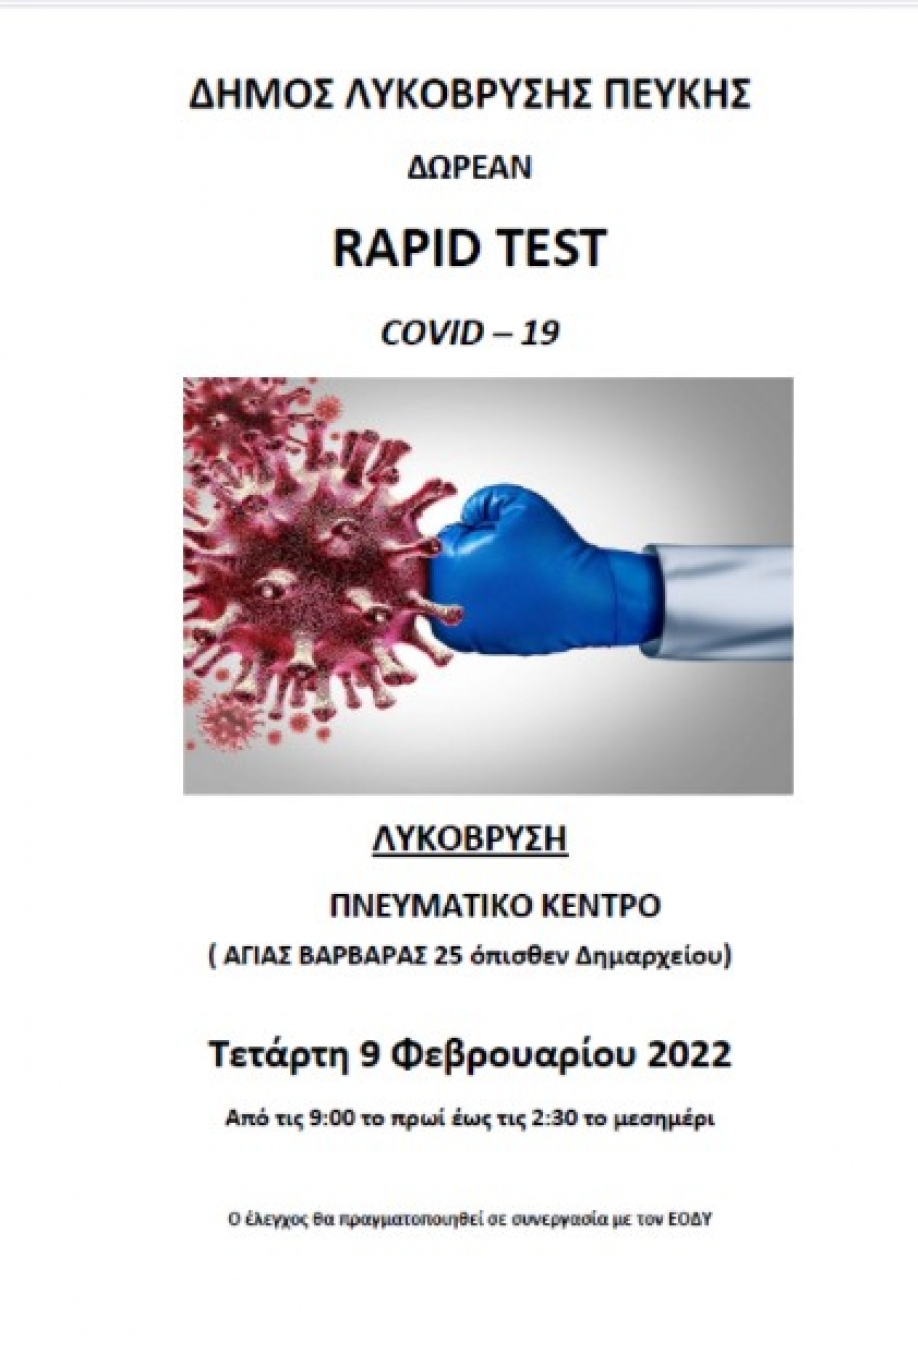 Δωρεάν rapid tests από τον ΕΟΔΥ στο Δήμου Λυκόβρυσης - Πεύκης